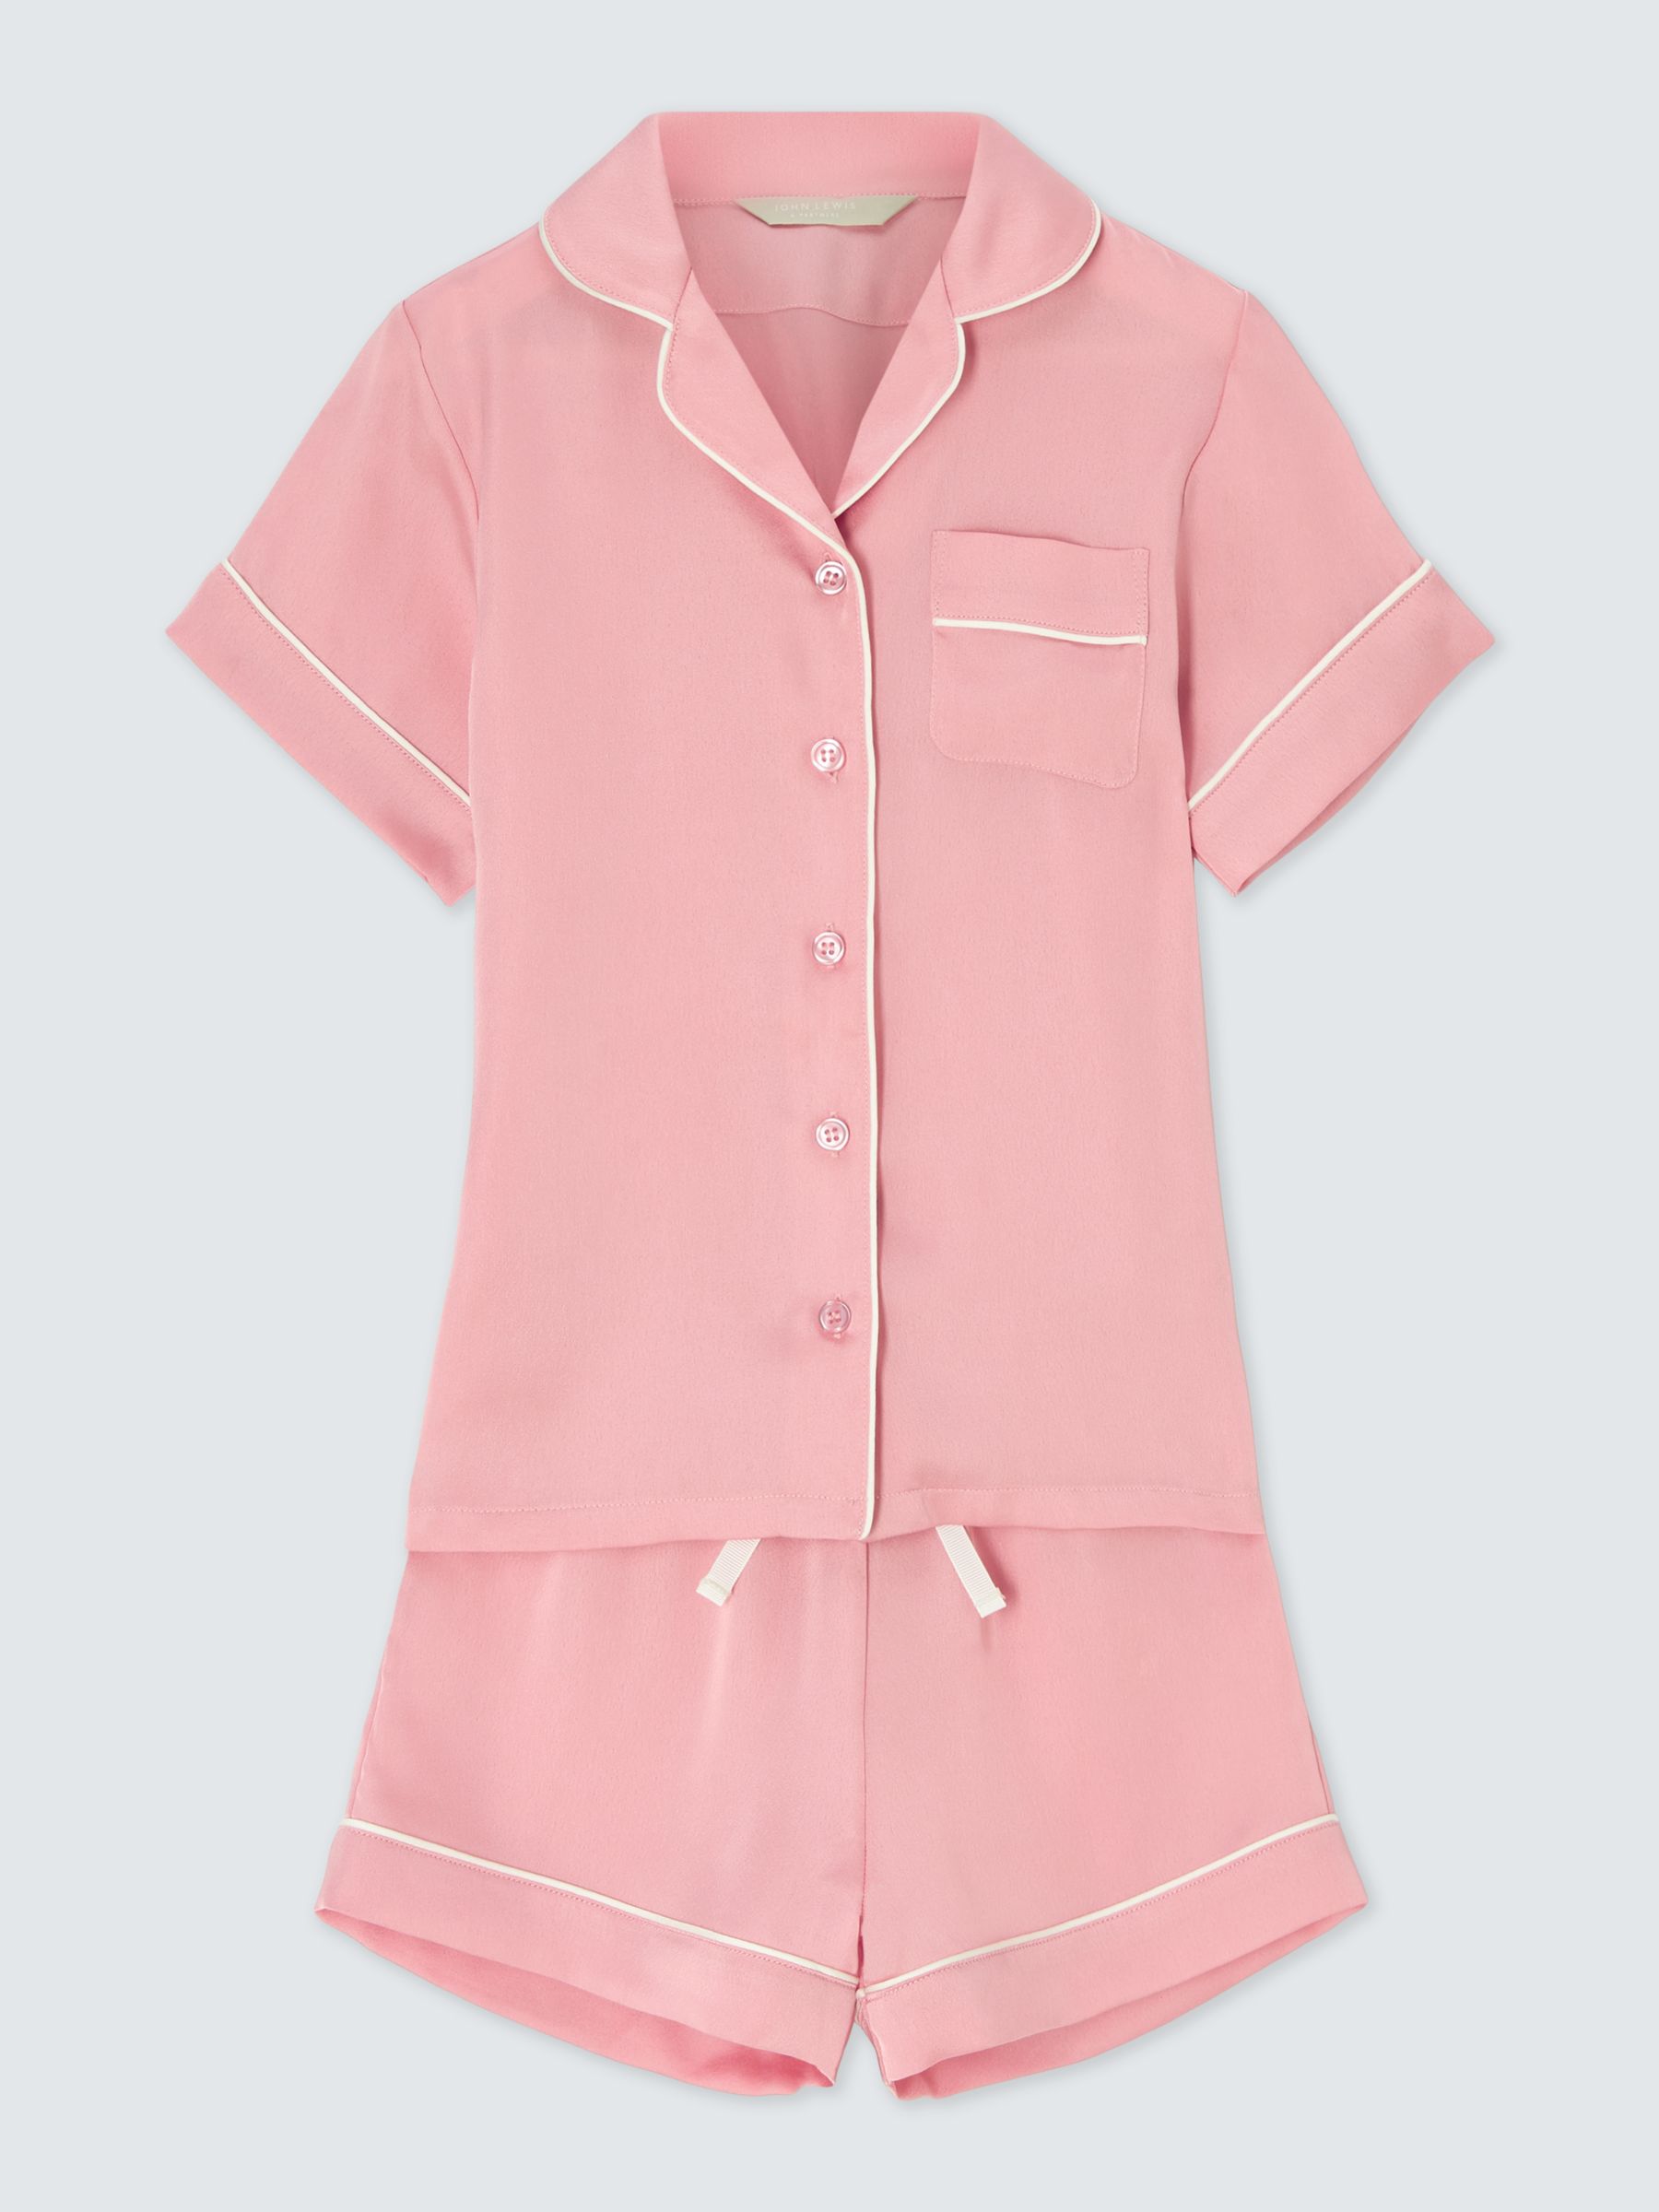 John Lewis Kids' Satin Shortie Pyjamas, Pink, 13 years